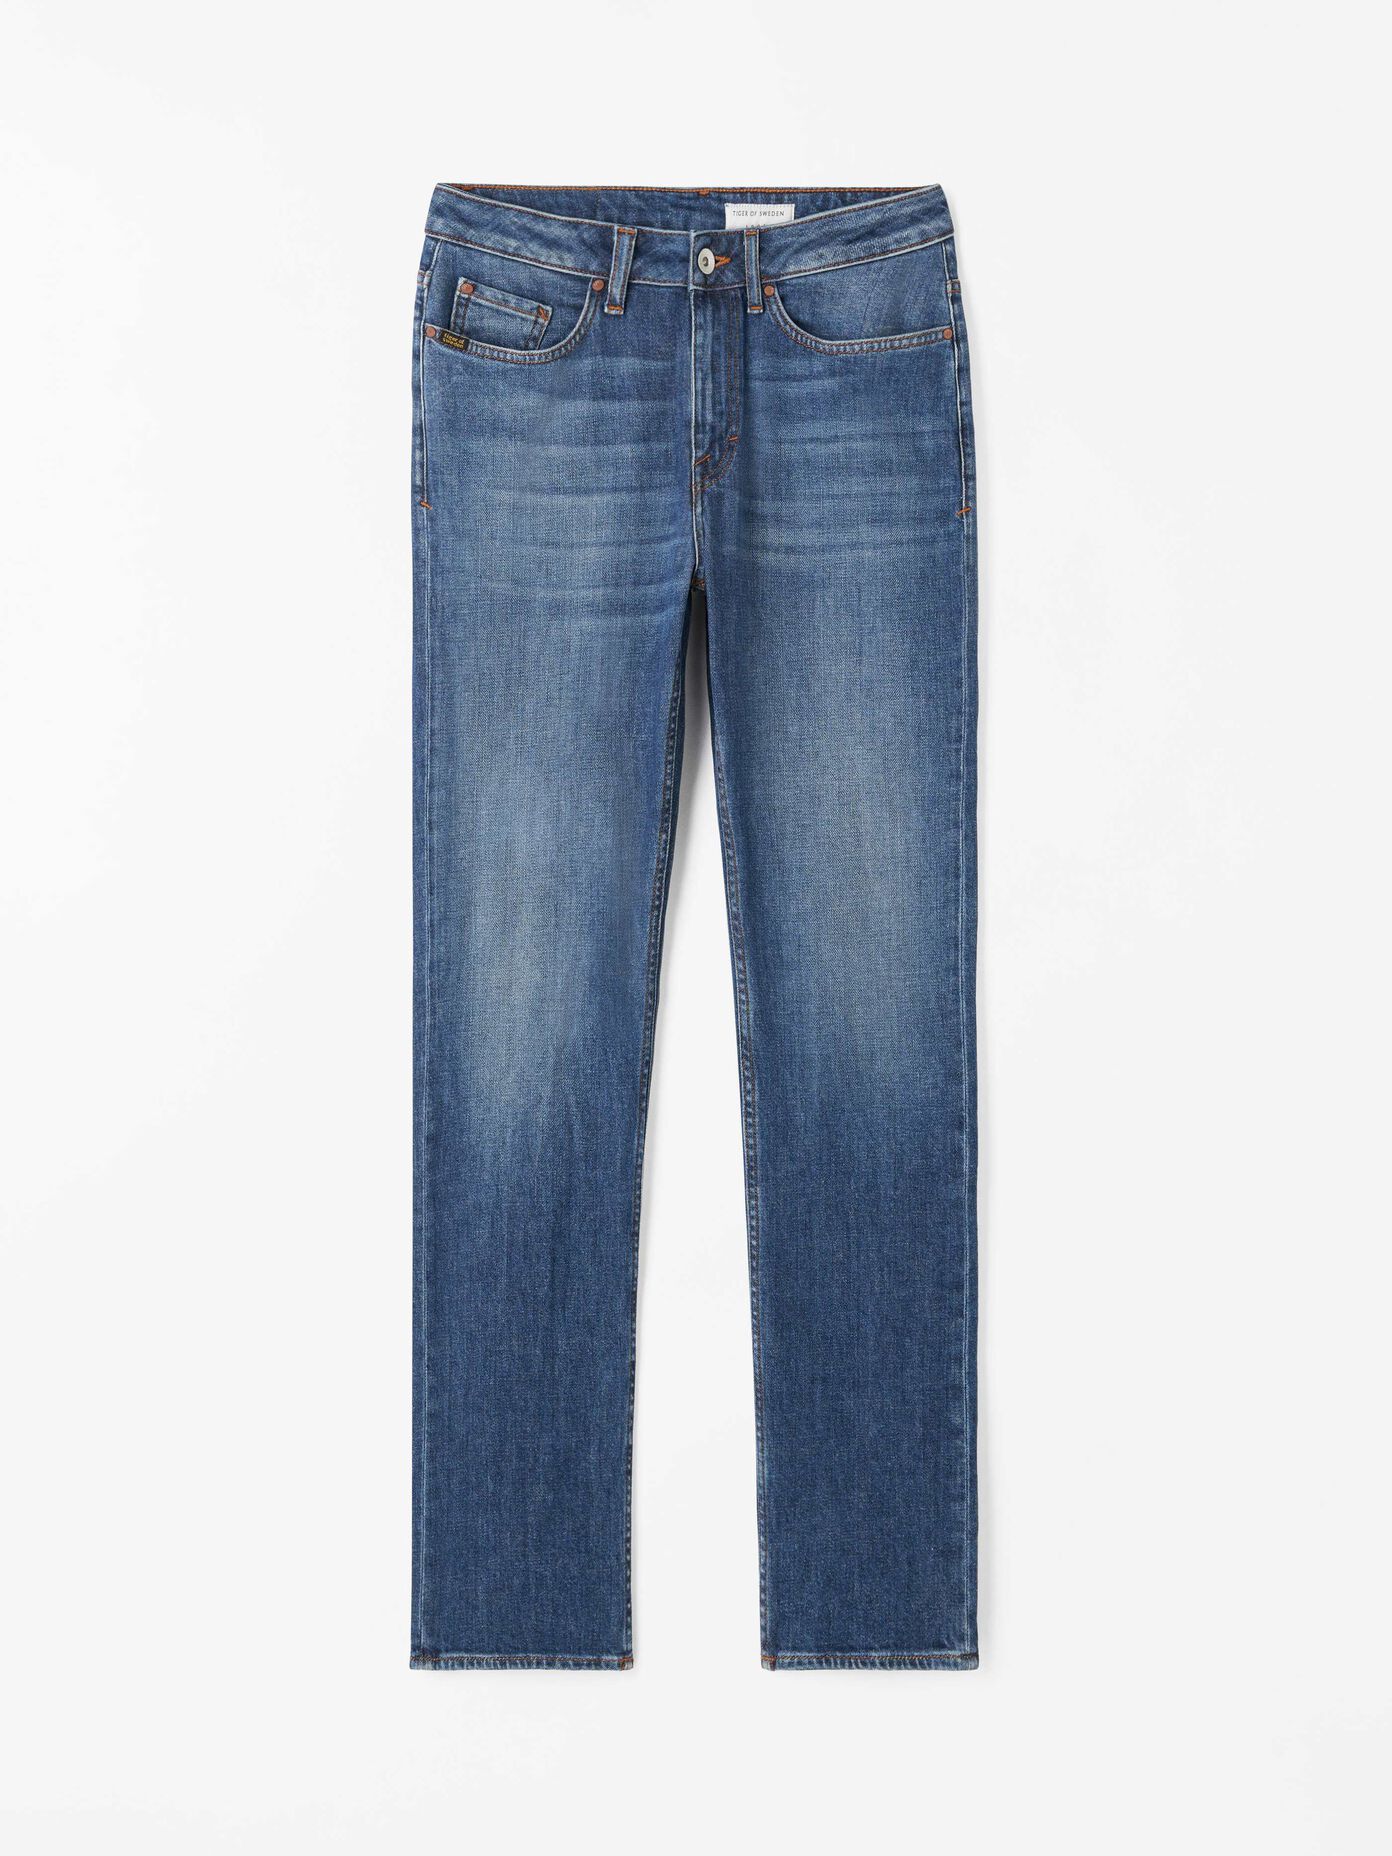 Jeans Dam. Köp stilsäkra jeans online | Tiger of Sweden